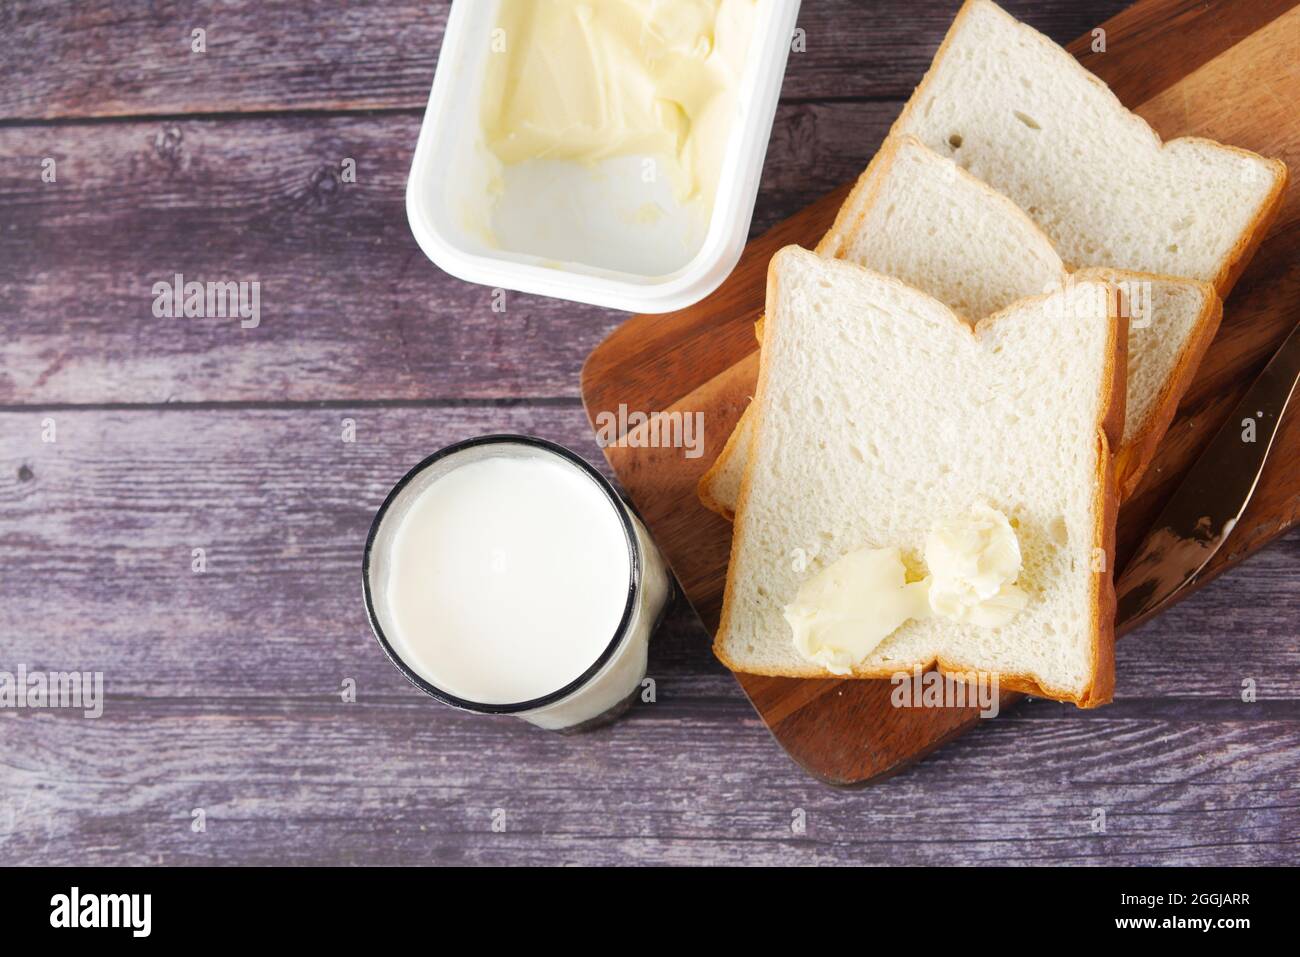 du lait, du beurre et du pain sur une planche à découper sur une table Banque D'Images